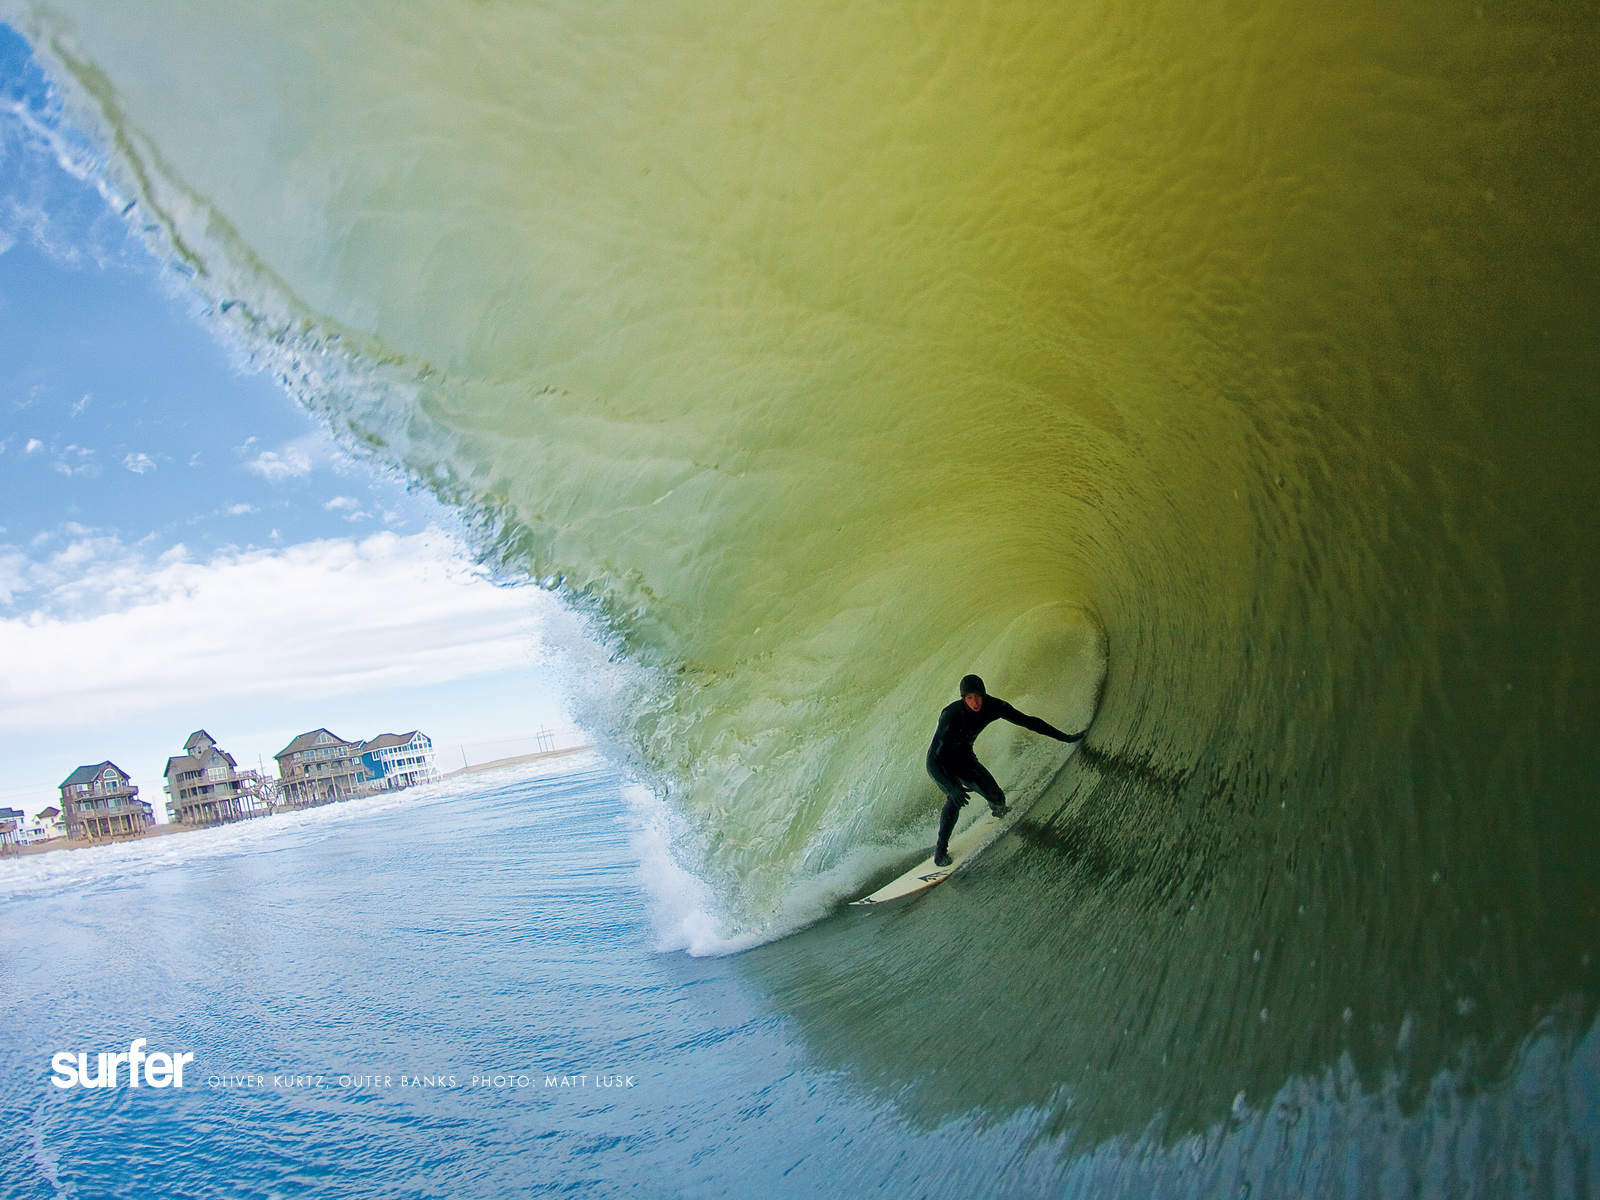 Surfing Surf Wallpaper Surfer Magazine